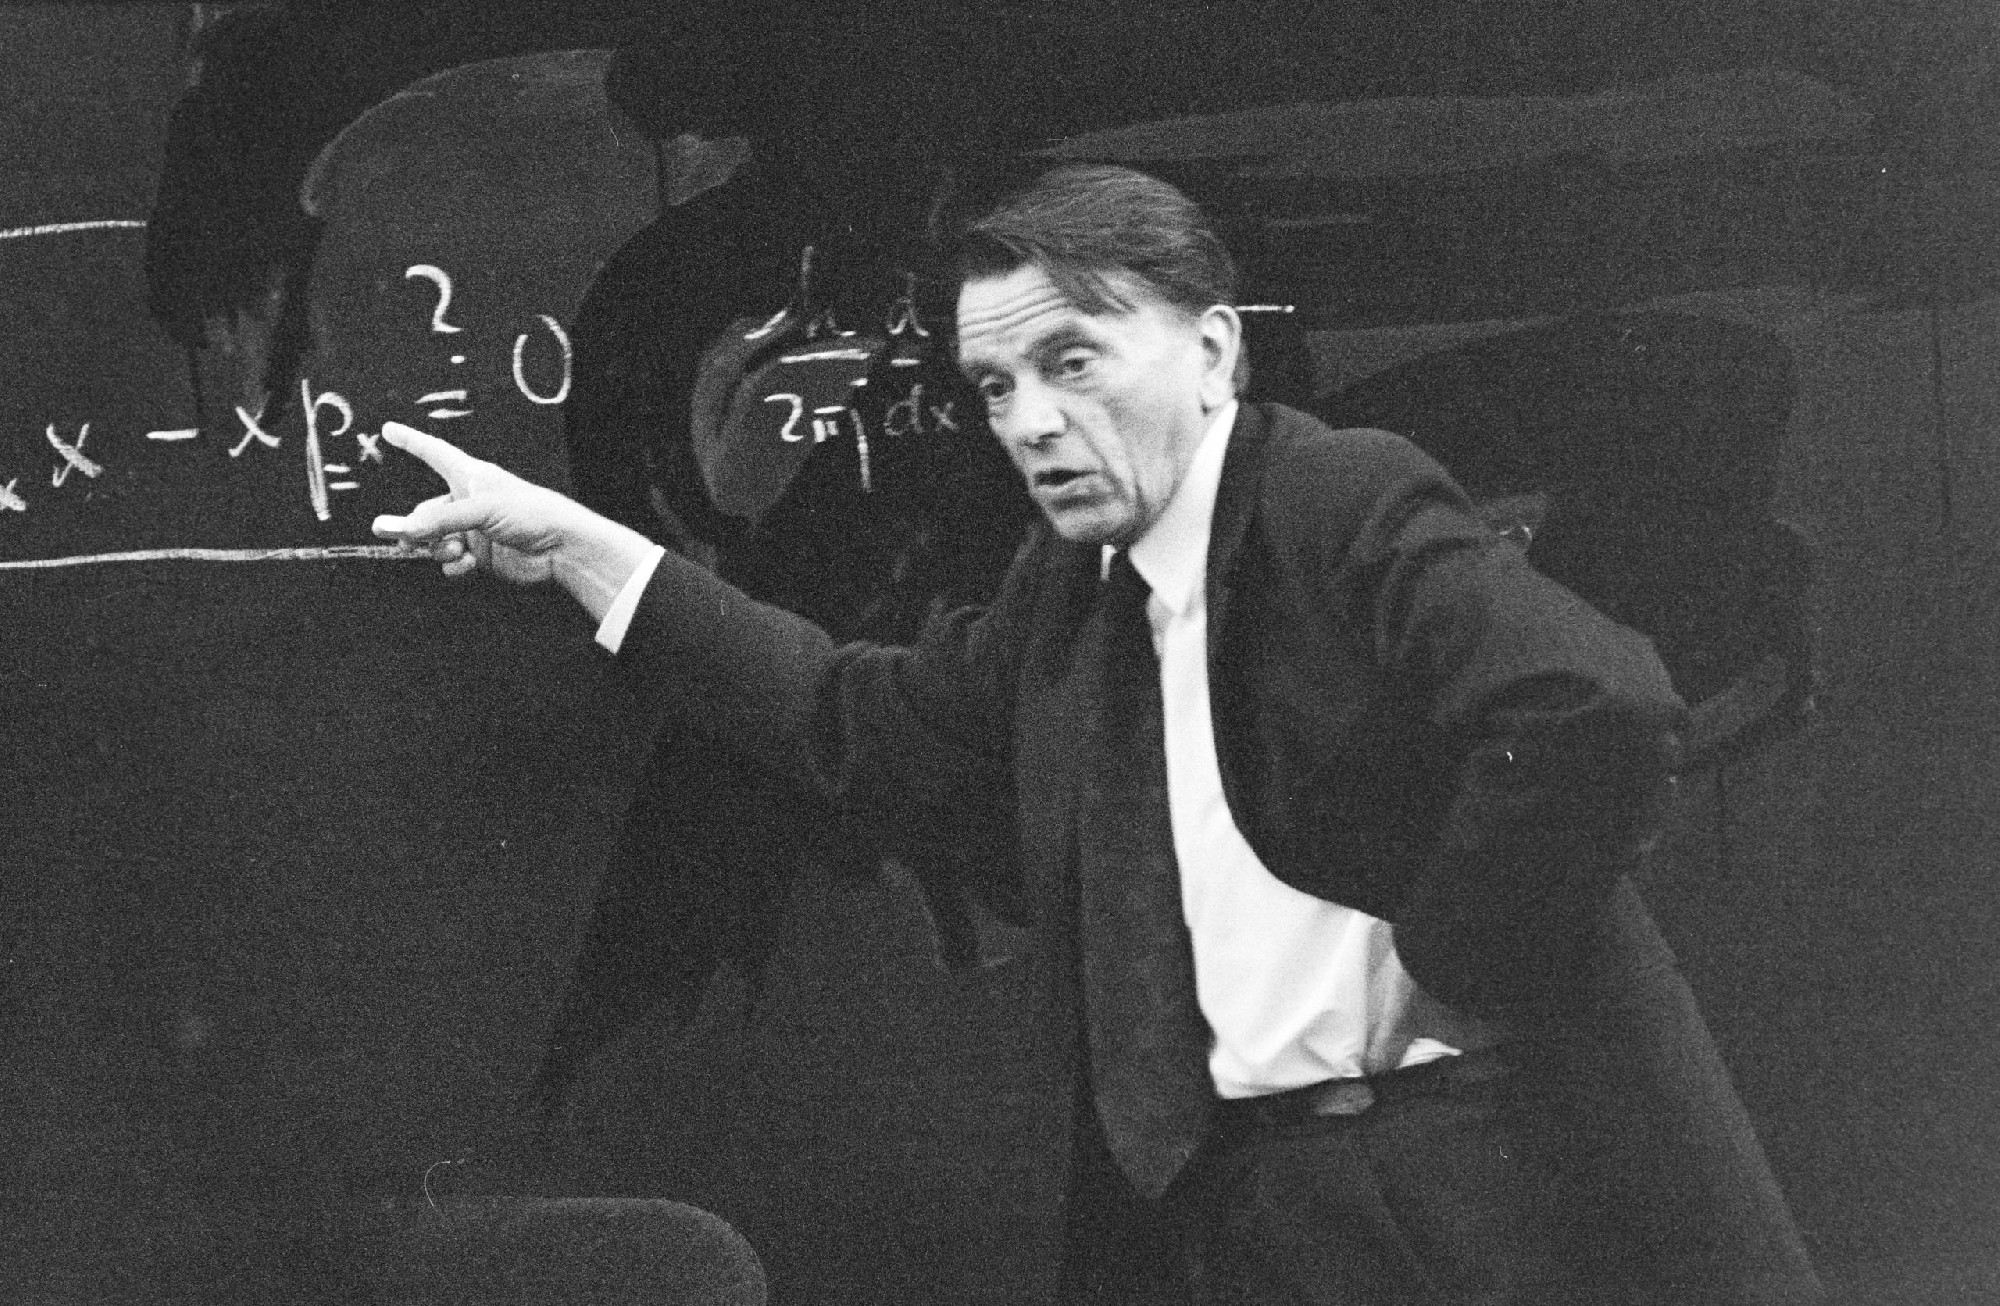 A 20. század második felének egyik legjelentősebb fizikusa, iskolateremtő tudós, legendás műegyetemi tanár – Simonyi Károly előadás közben